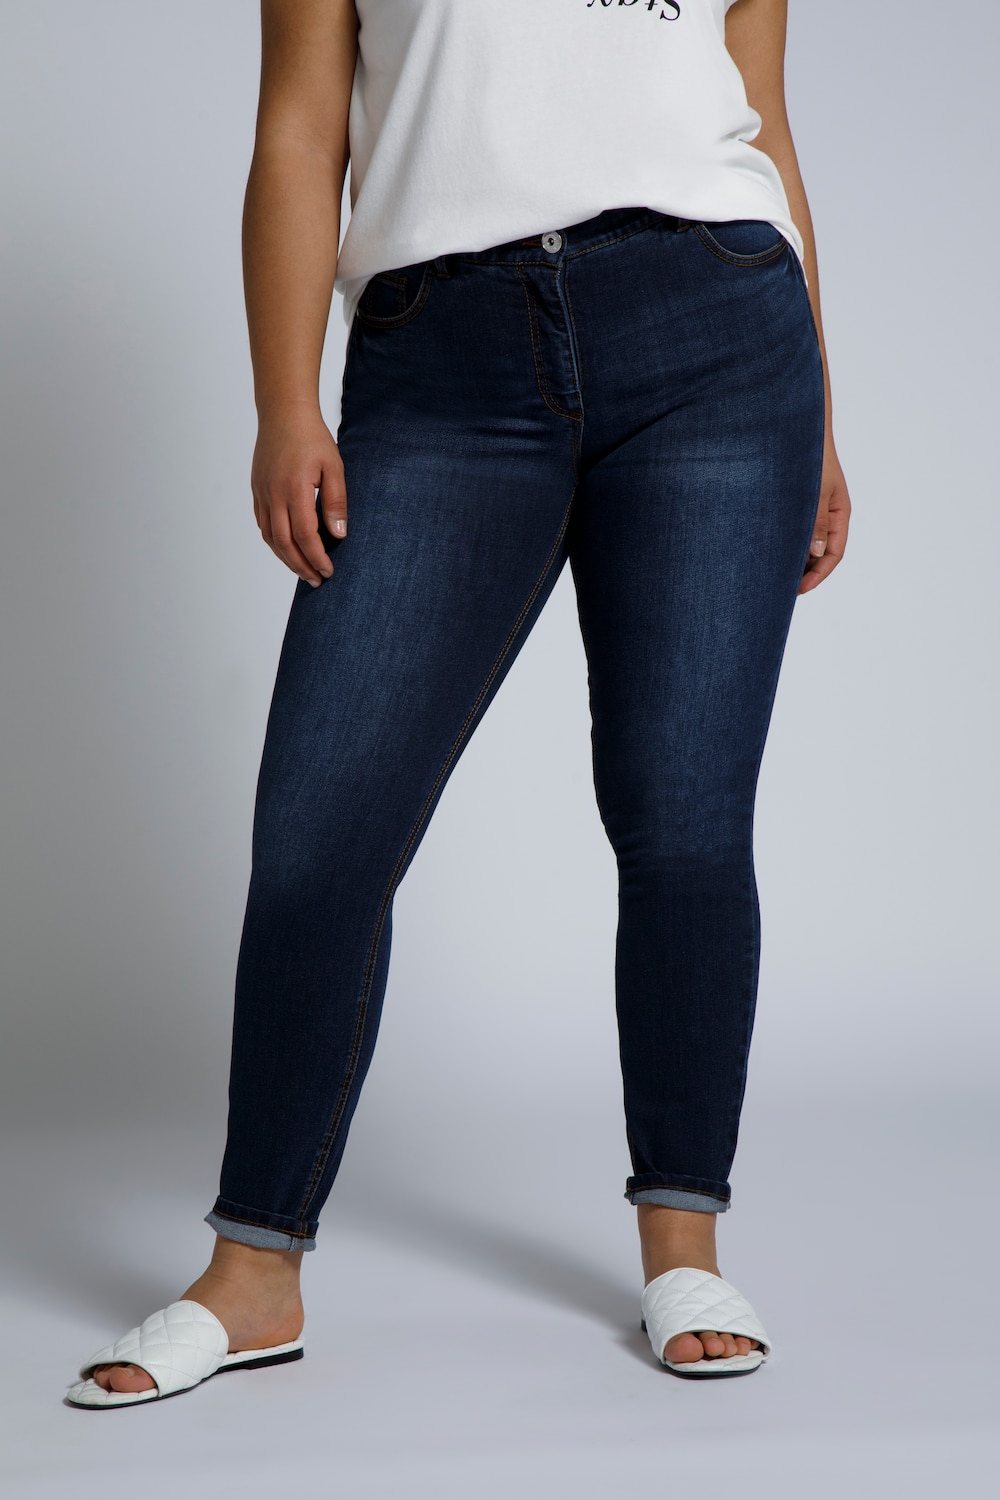 Grote Maten skinny jeans, Dames, blauw, Maat: 48, Katoen, Studio Untold